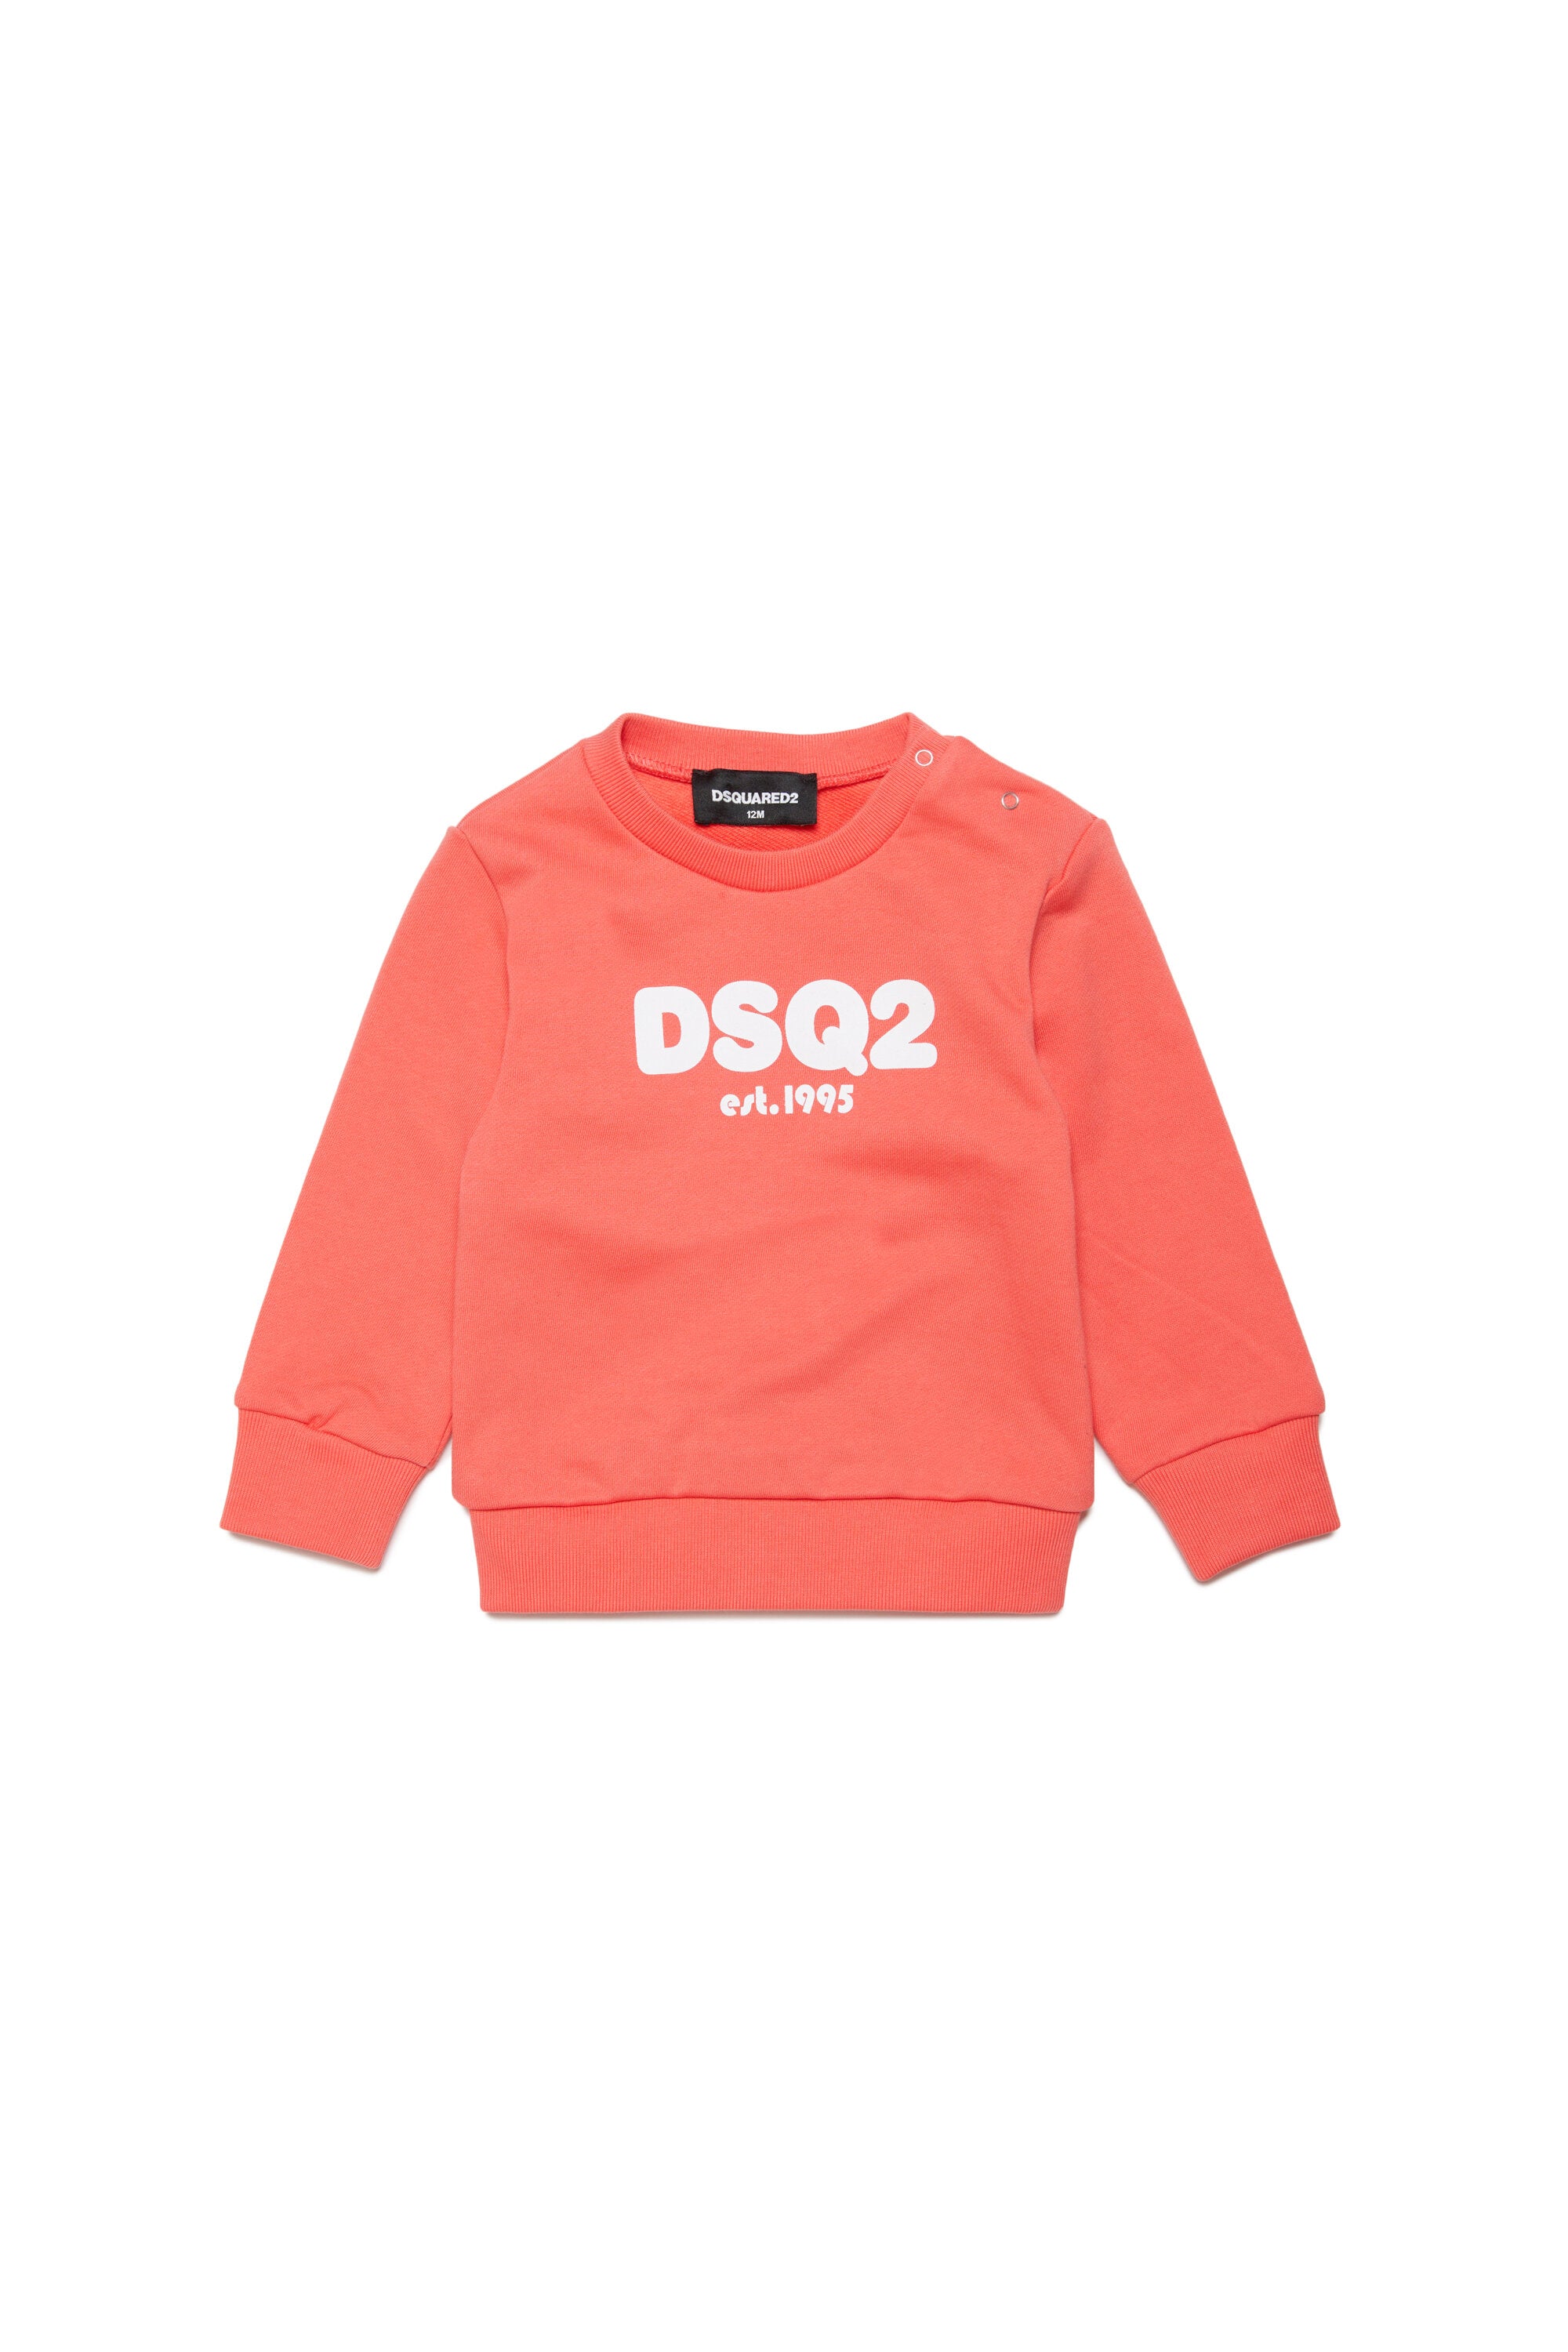 DSQ2 branded crew-neck sweatshirt est.1995